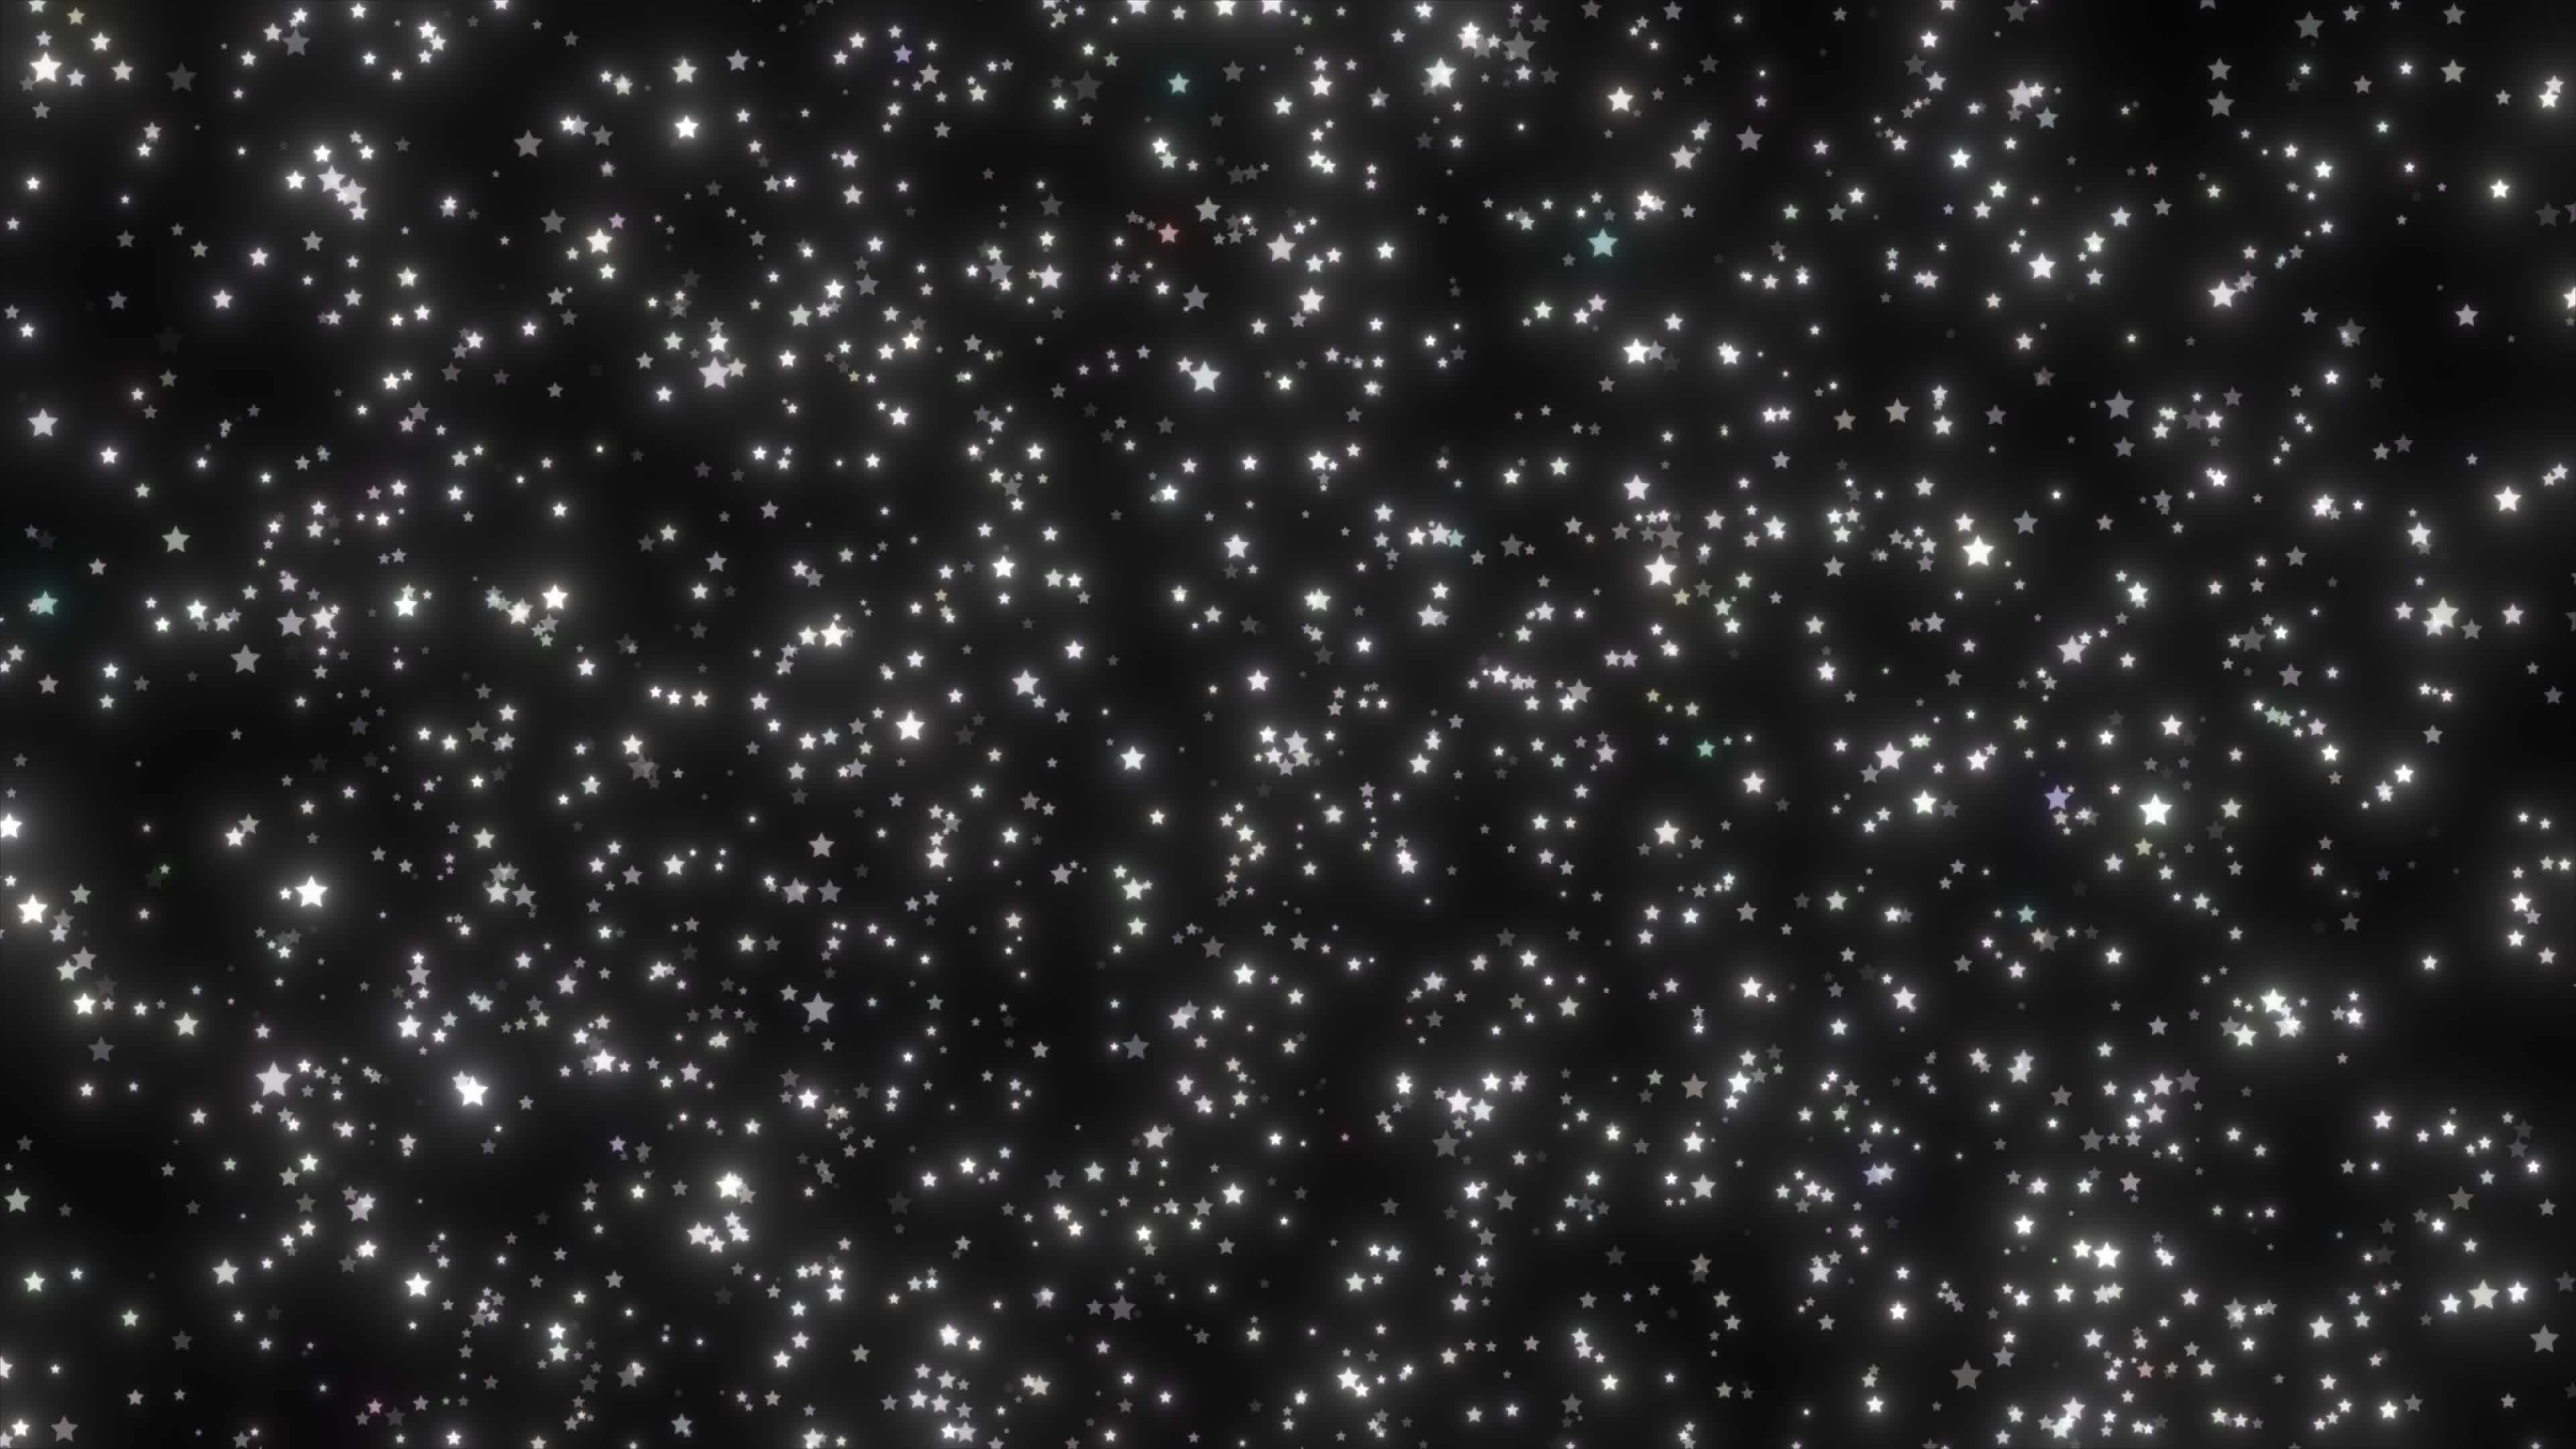 Những ngôi sao trắng lấp lánh rơi trên nền đen sẽ khiến bạn cảm thấy như đang trôi dạt trong vũ trụ bao la. Sự long lanh của những ngôi sao sẽ giúp bạn thư giãn và không gian đen tối sẽ tạo ra một cảm giác bình yên và lạ lẫm. Hãy xem những ngôi sao này rơi lần lượt để trải nghiệm những điều kỳ diệu. 